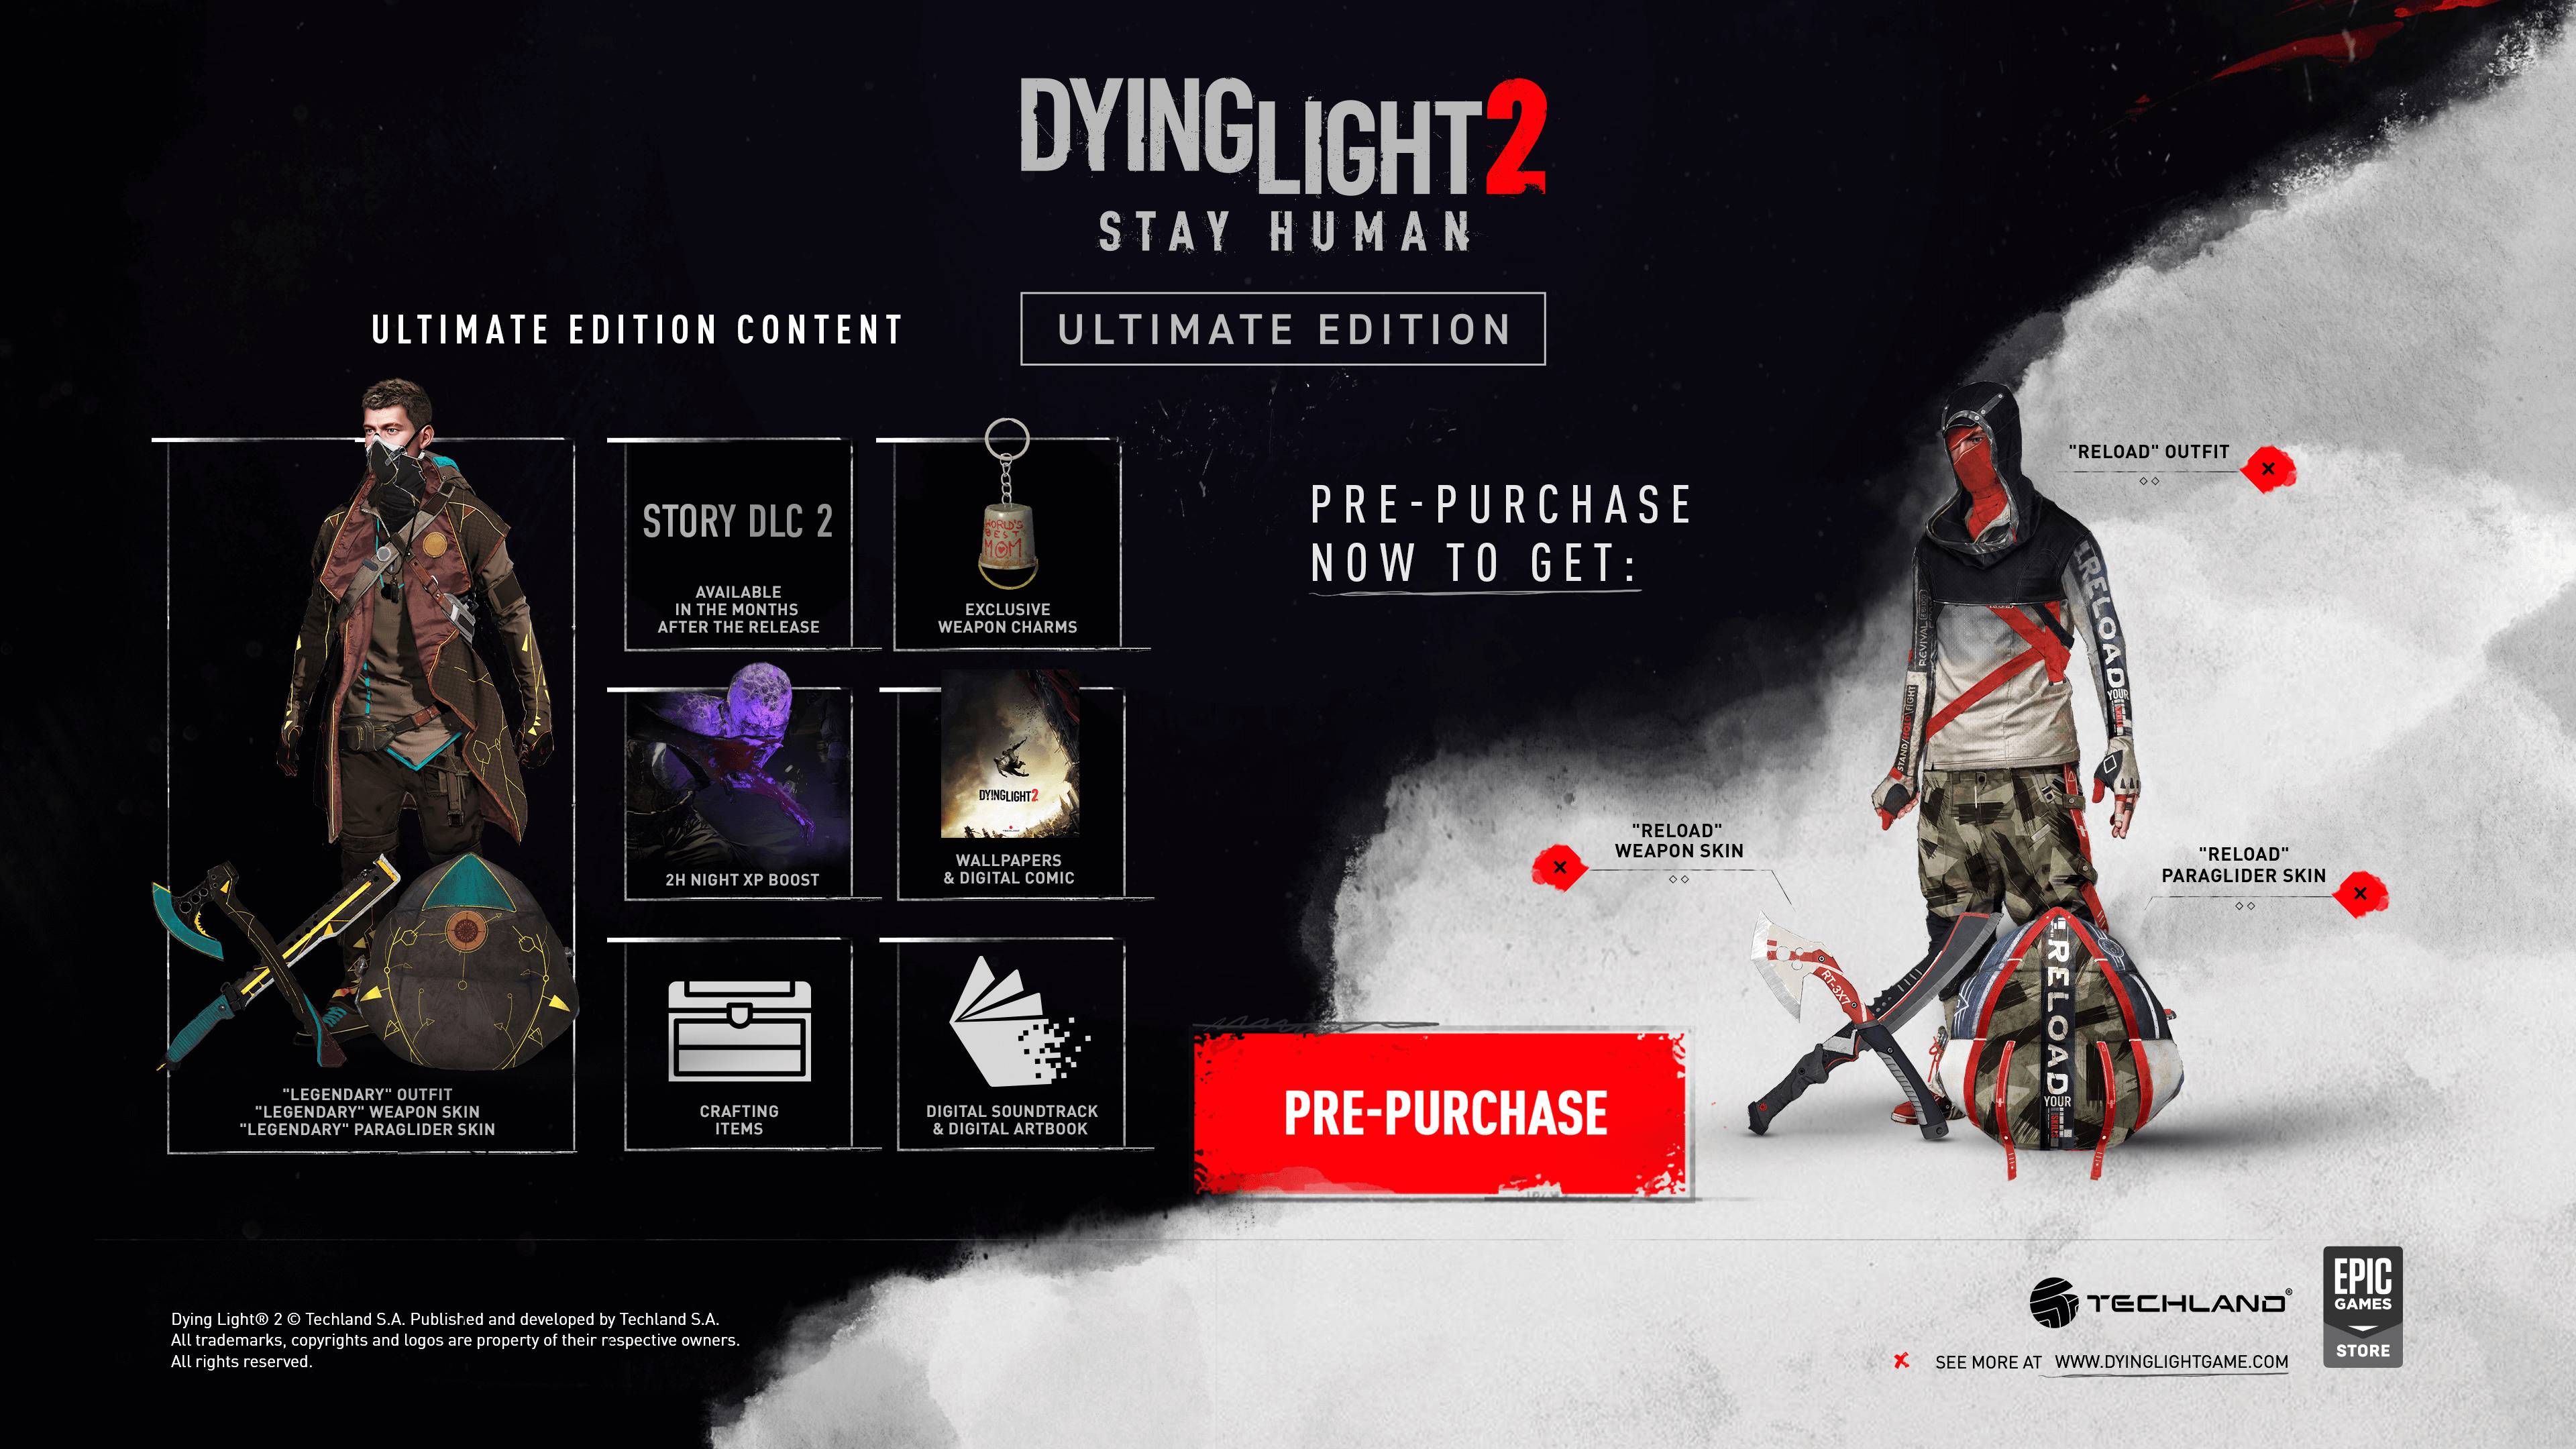 Даинг лайт 2 длс. Dying Light 2 коллекционное издание предзаказ. Dying Light 2 коллекционное издание. Dying Light 2 stay Human коллекционное издание.